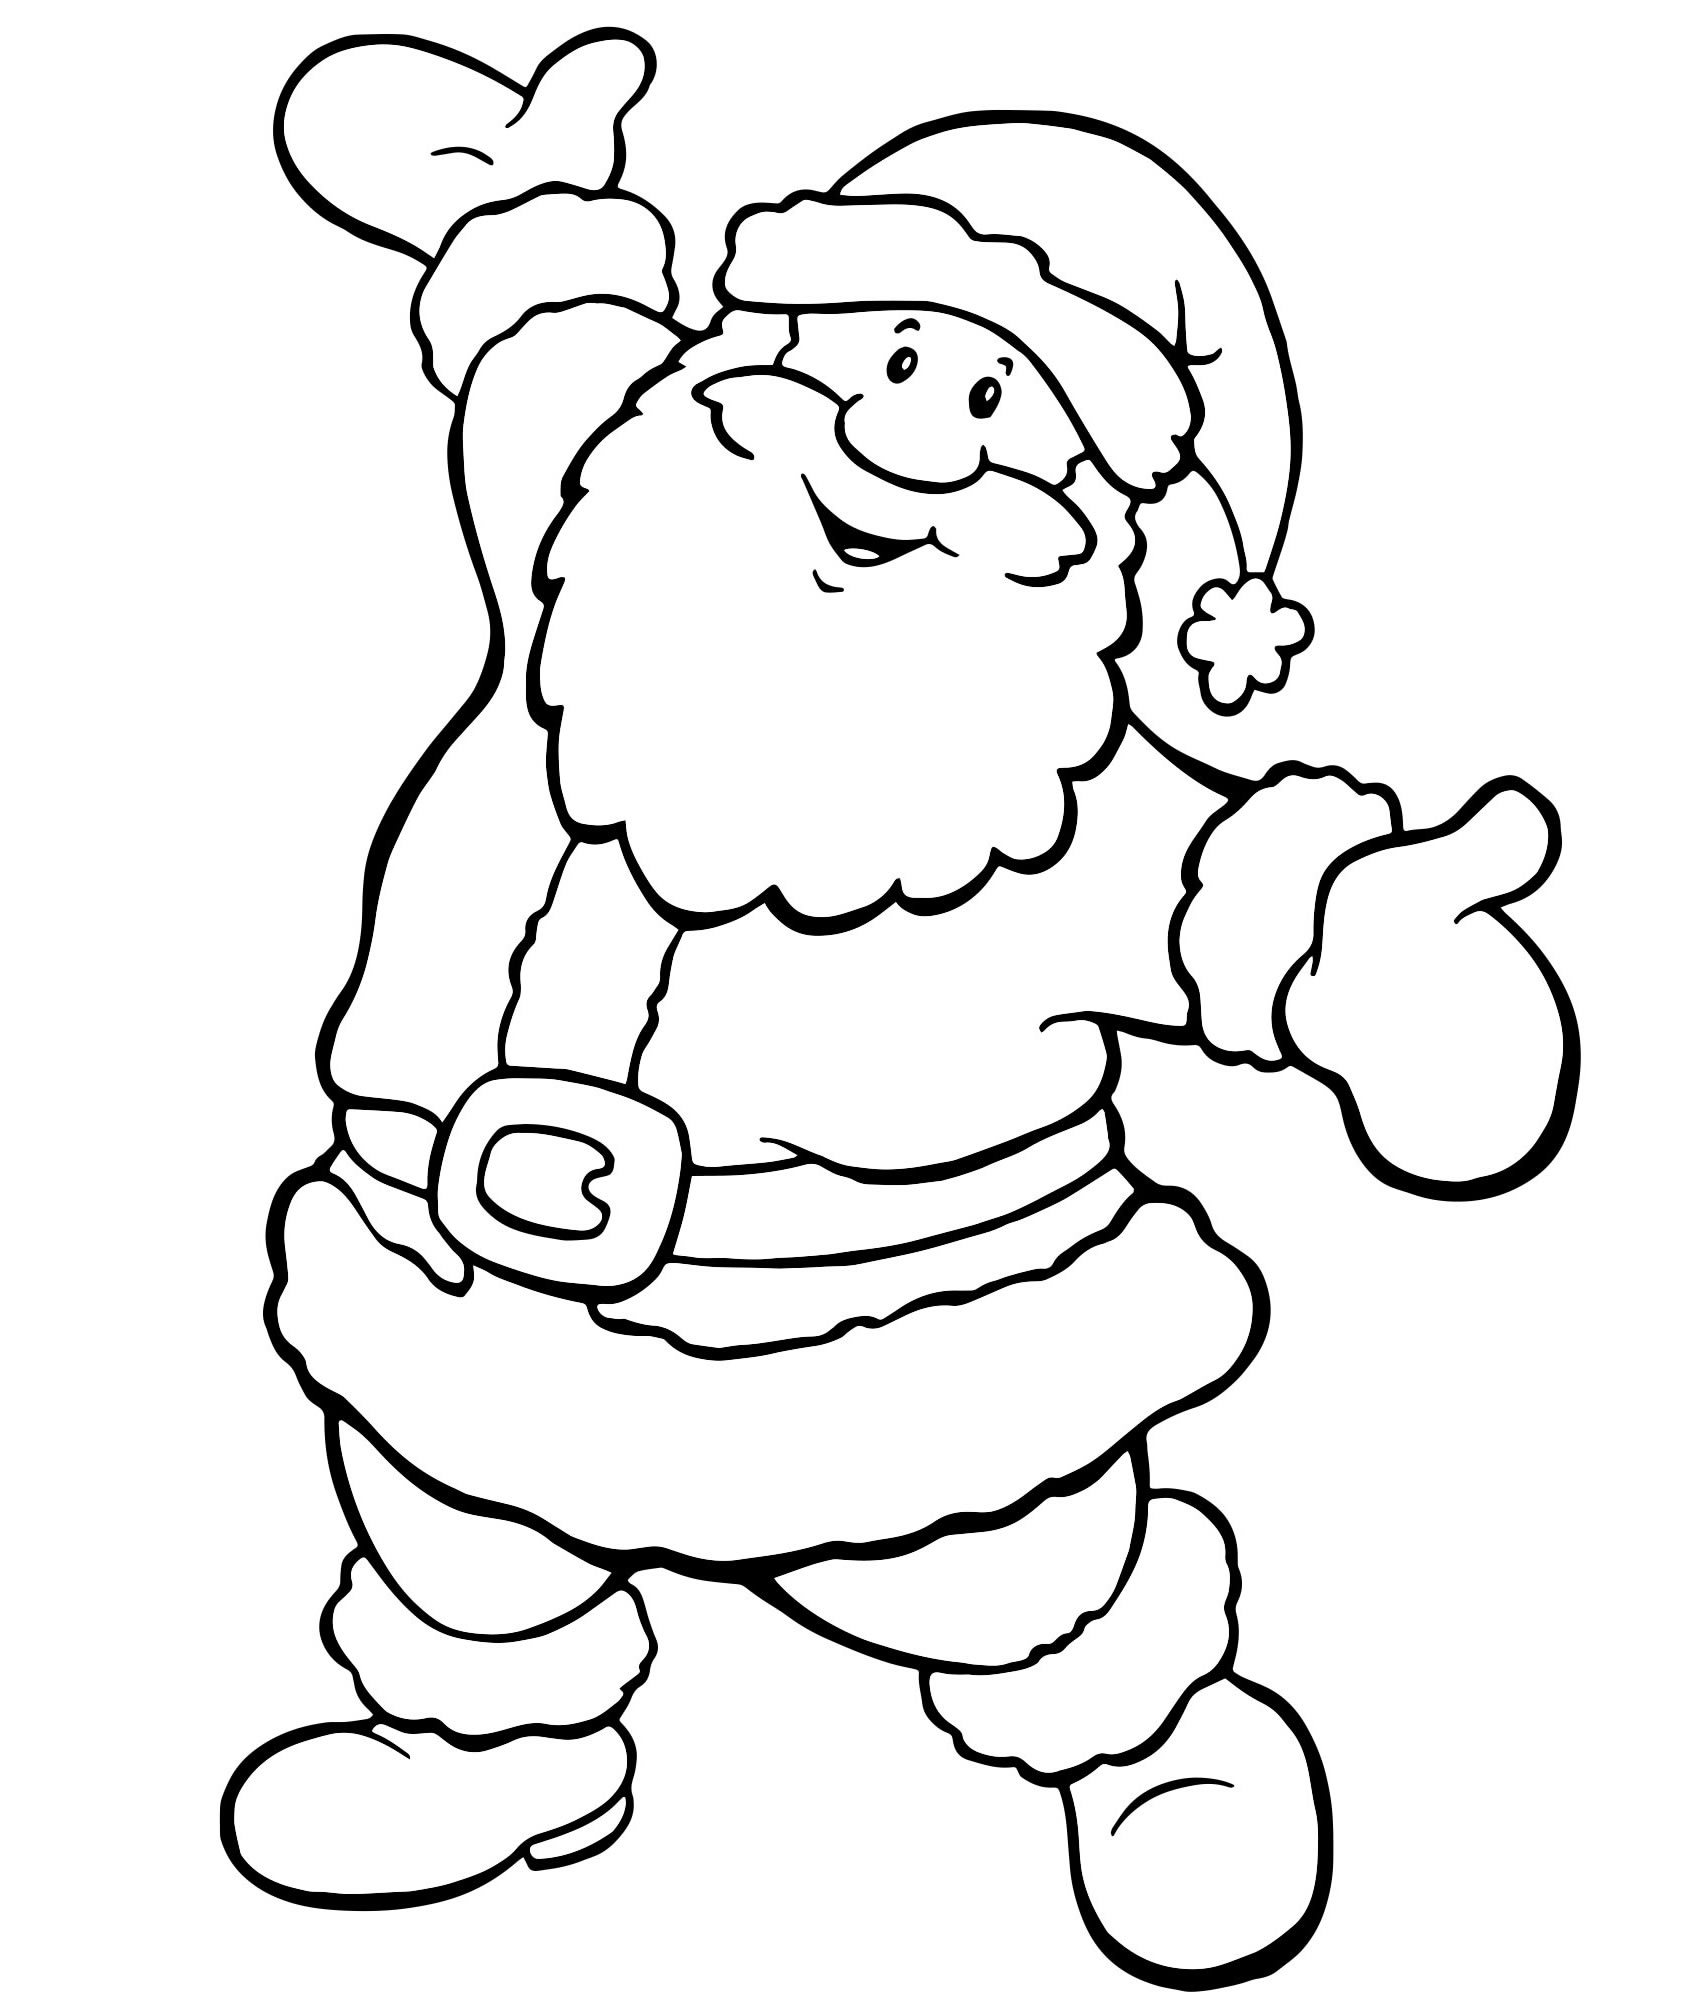 Волшебник Дед Мороз раскраска для детей